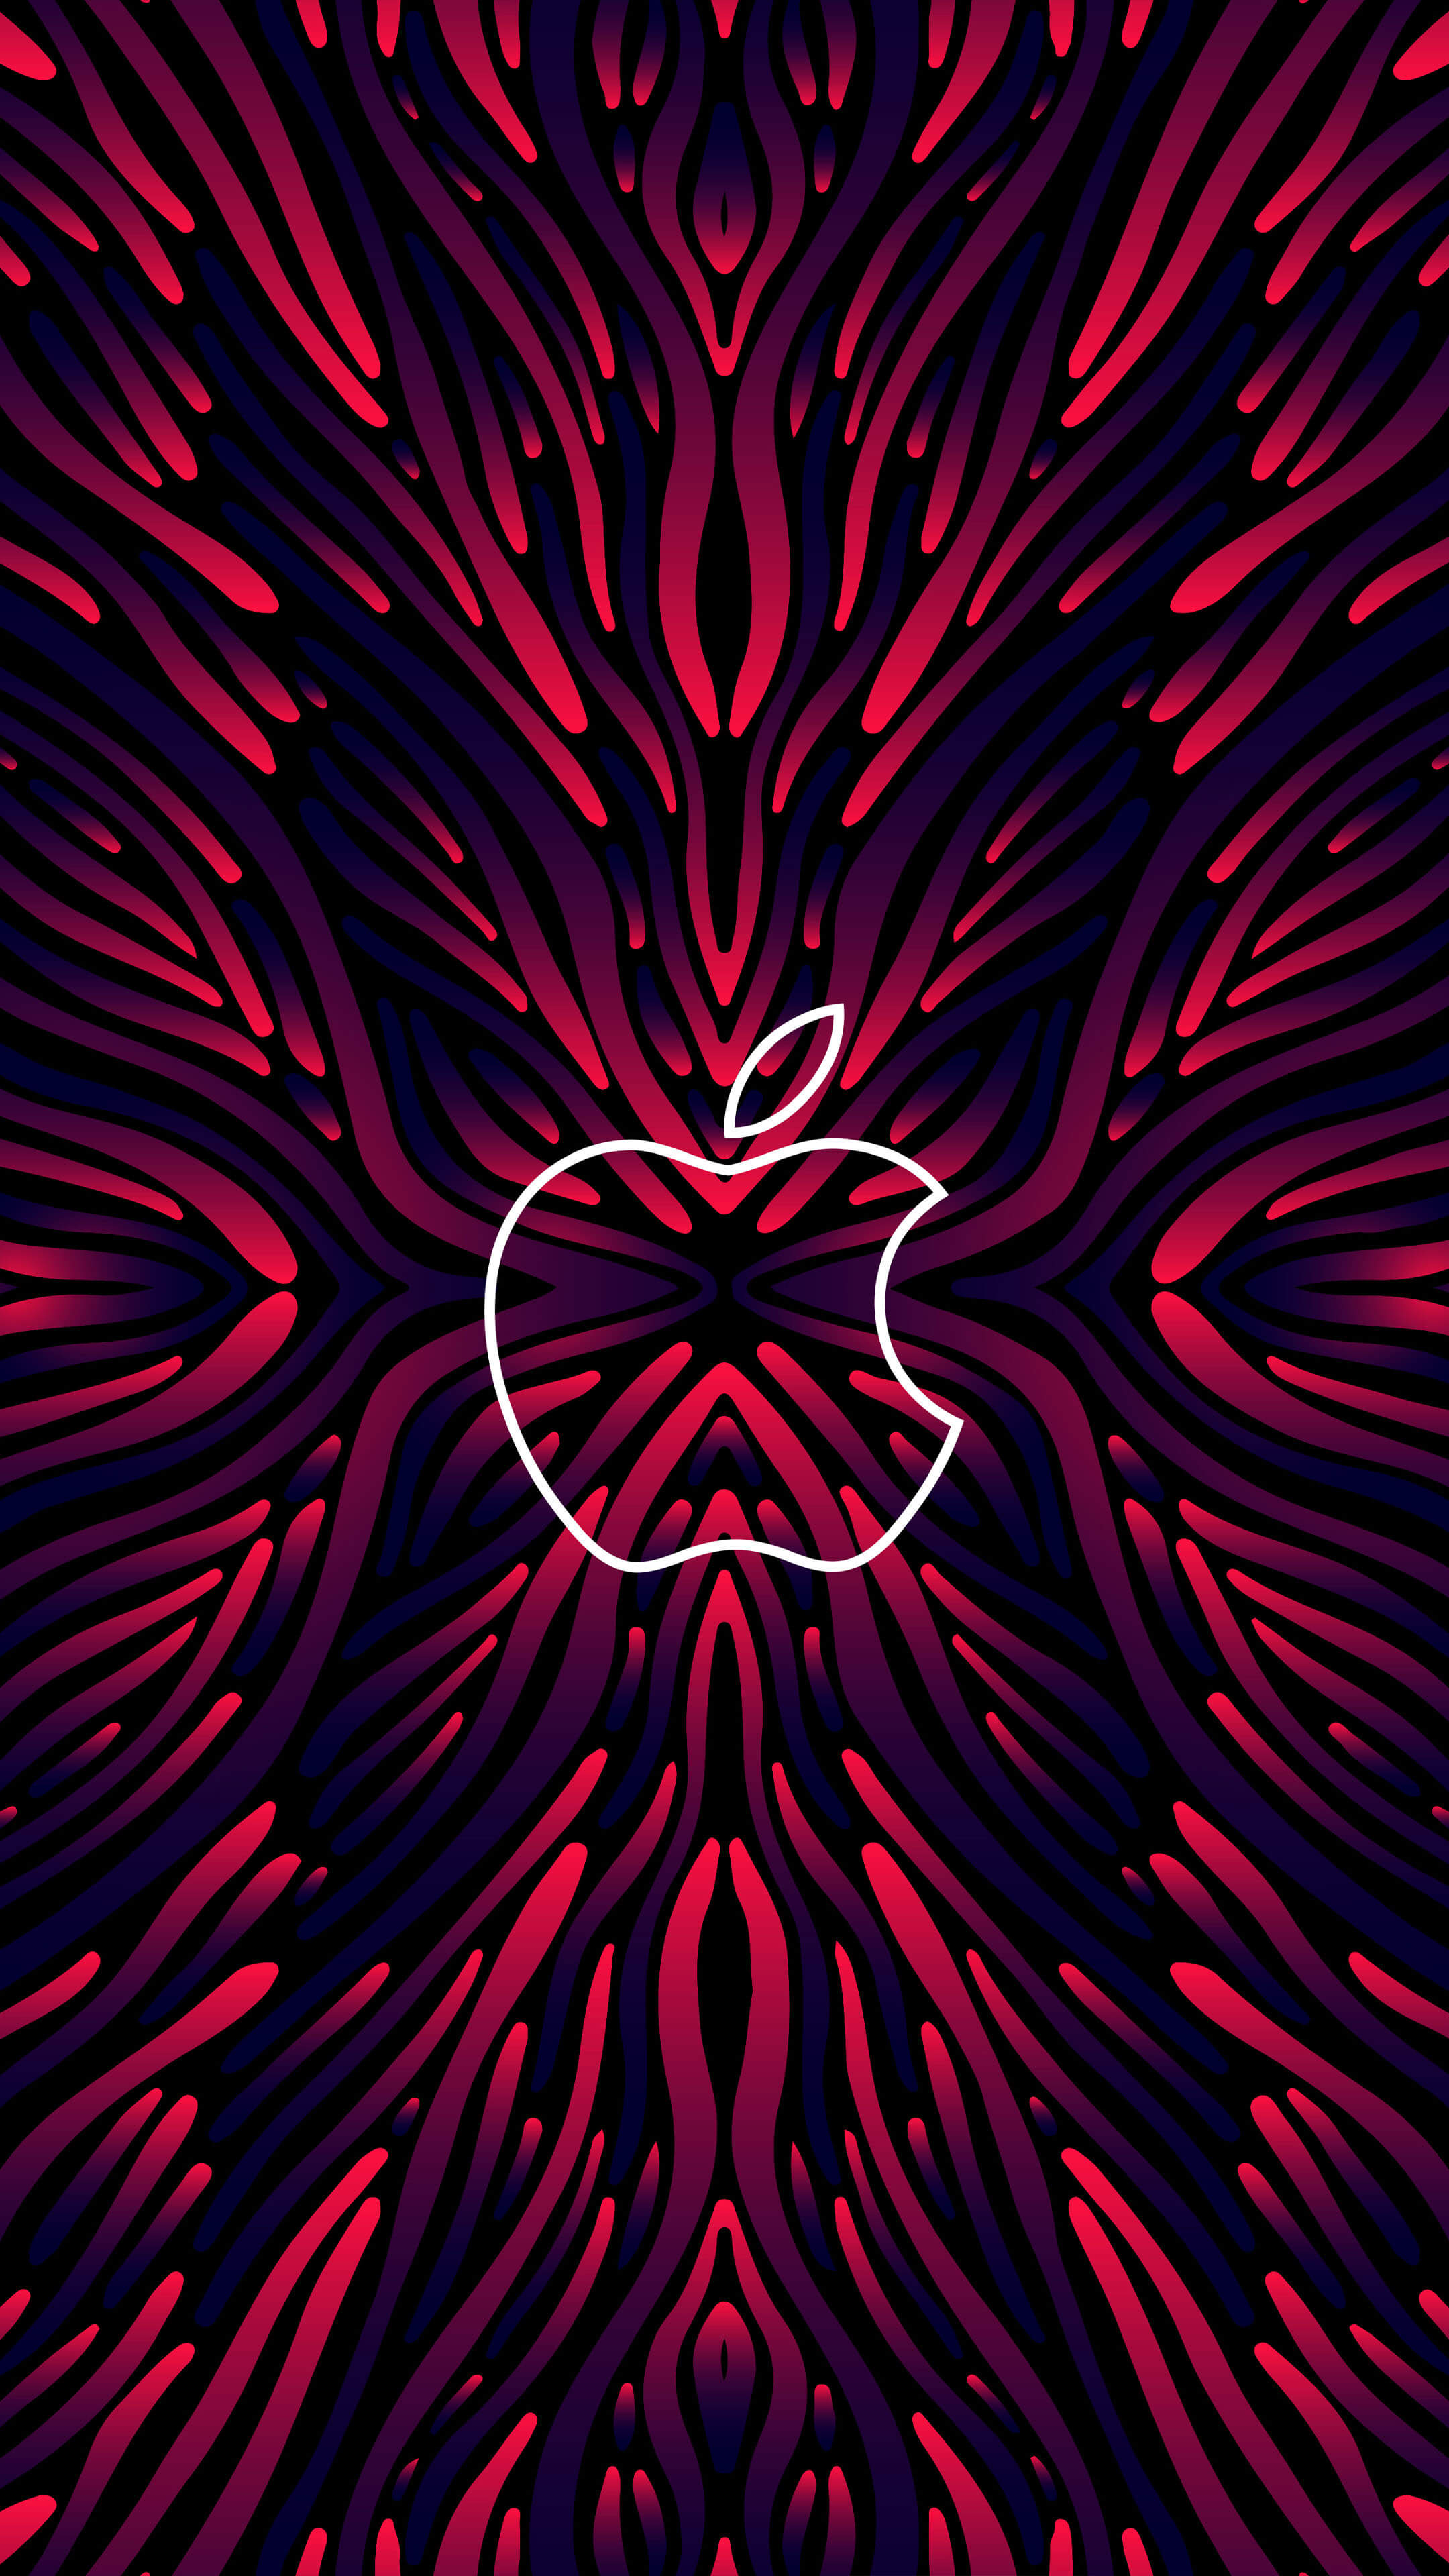 Logo & Logo Wallpaper Collection: 100+ Top Apple Logos , Apple logo  wallpaper (Part 4)....